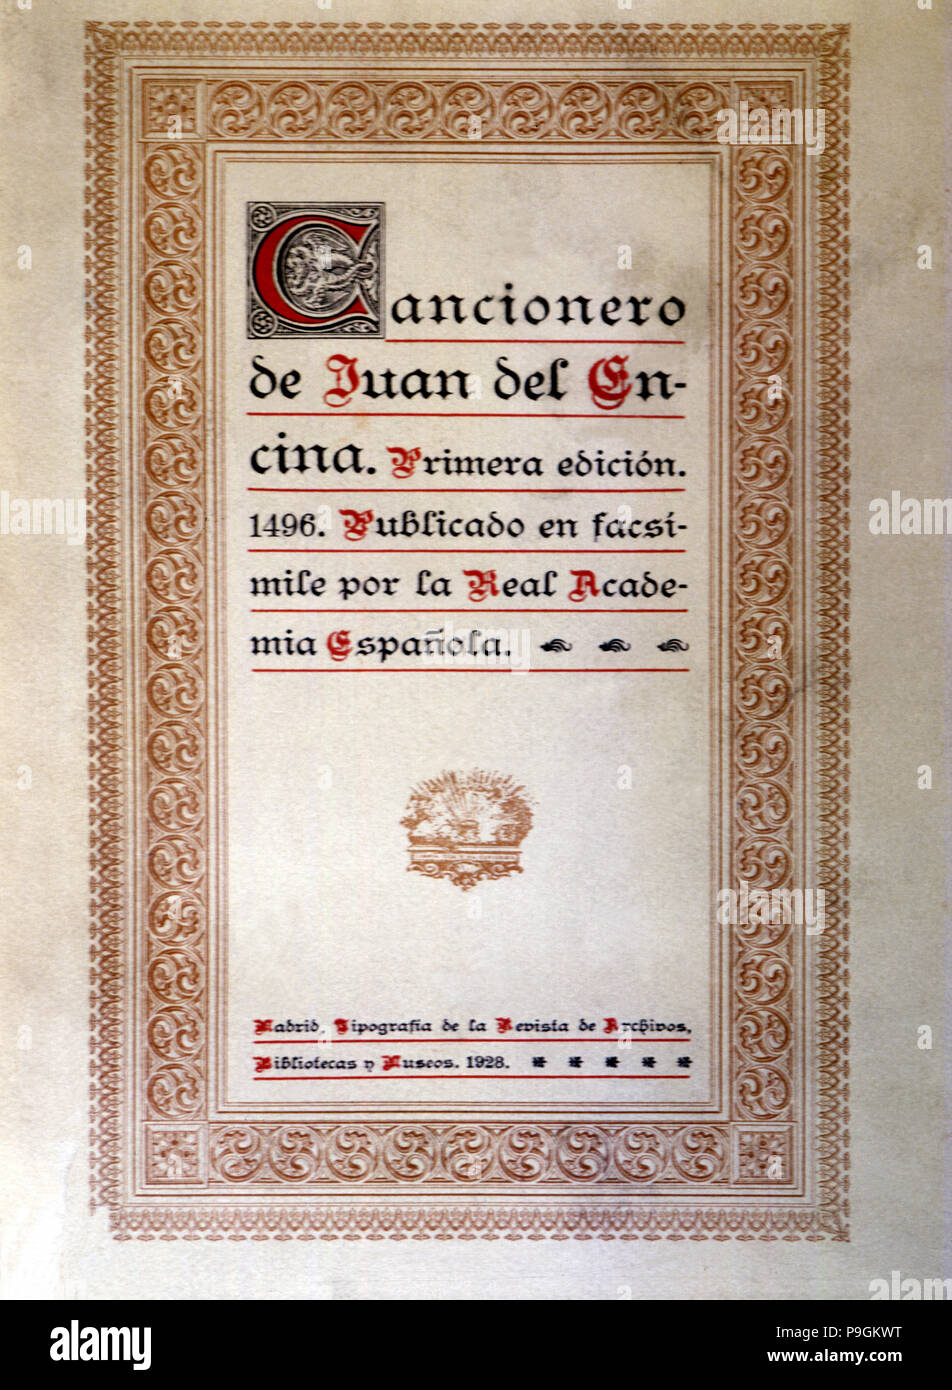 Abdeckung "cancionero" (Song Book) von Juan de la Encina, faksimile Reproduktion, 1928. Stockfoto